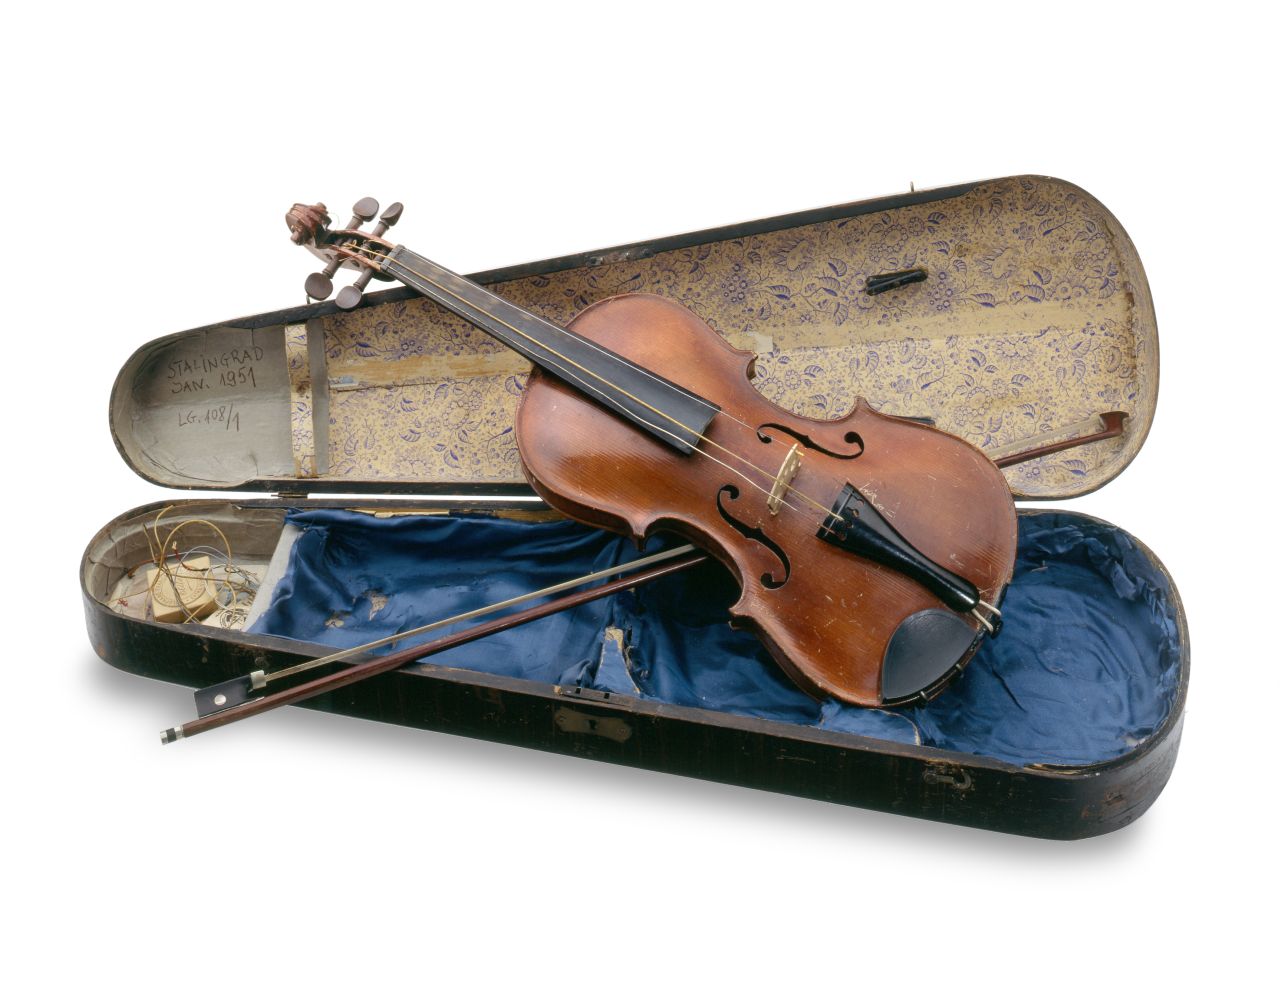 Der Korpus der Geige sowie die Schnecke sind aus rötlich-braunem Holz gefertigt. Hals und Saitenhalter sind schwarz. Die Geige liegt auf einem blauen Seidentuch in einem Geigenkasten, dessen Deckel beige ausgeschlagen ist. Im Deckel klemmt der Bogen.